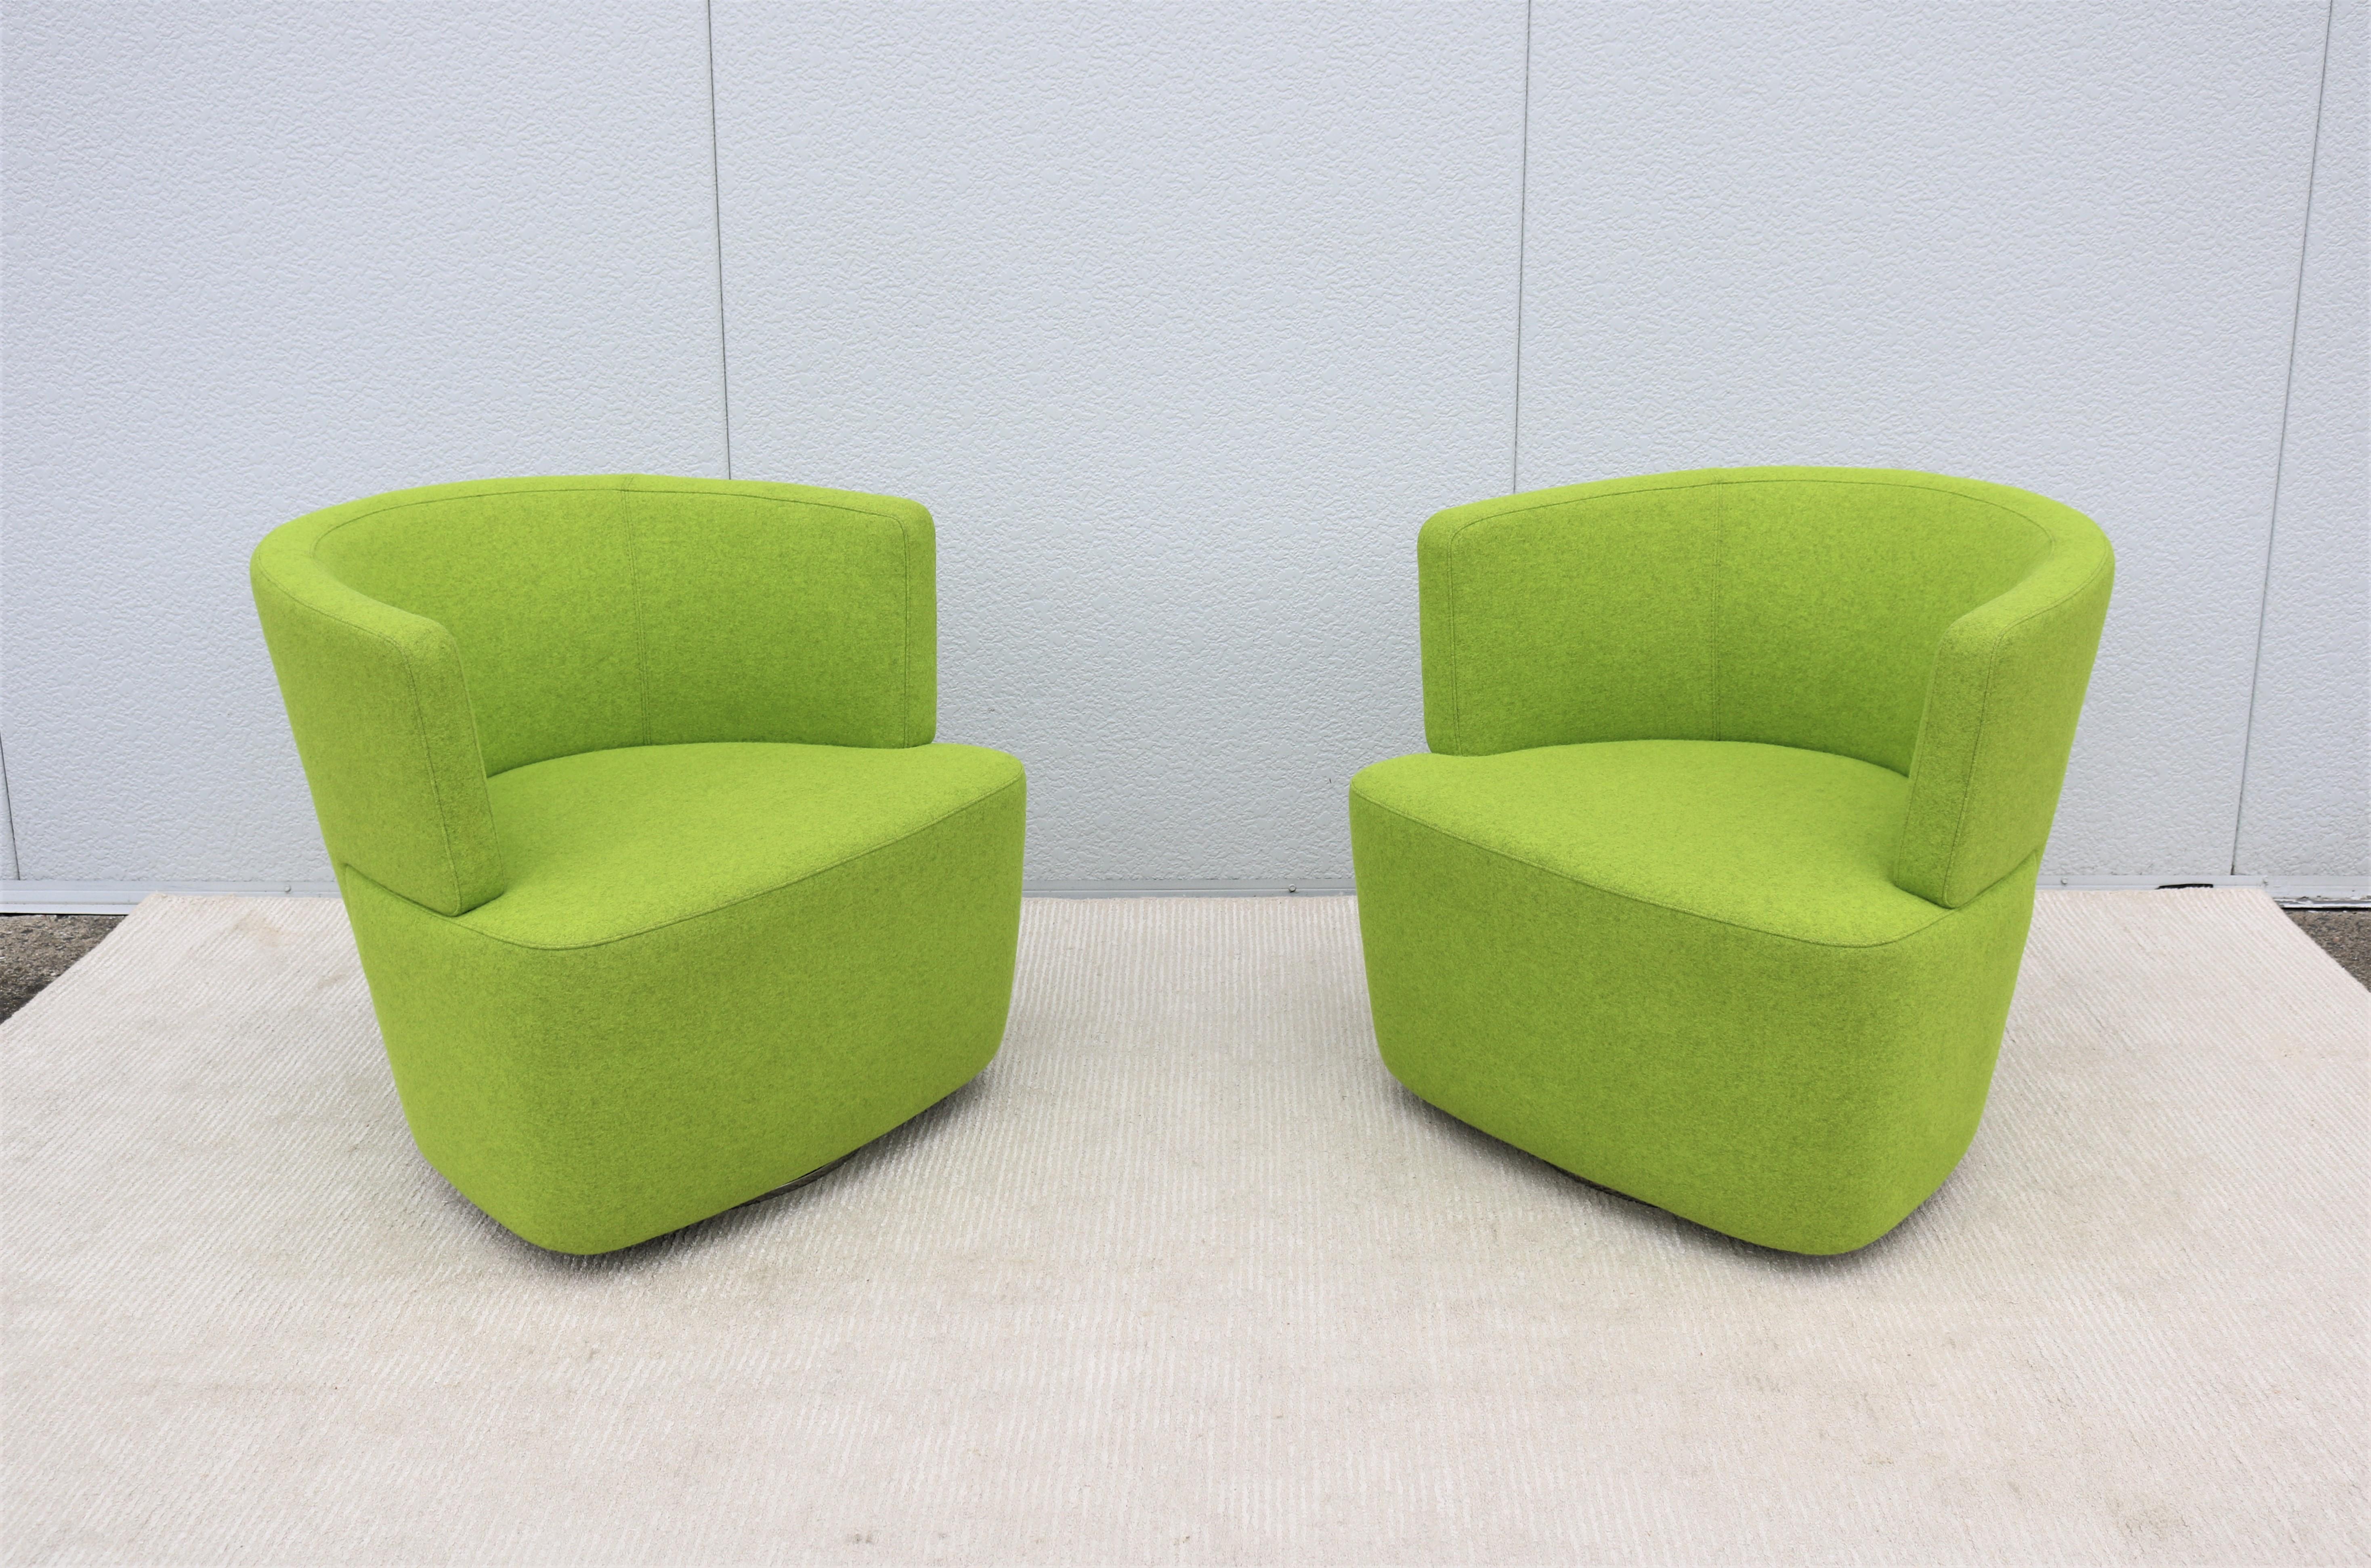 Fabuleuse paire de fauteuils pivotants vert Joel de Walter Knoll.
La beauté moderne et le design intelligent de la chaise longue Joel sont une nouvelle version de la chaise club classique.
Un chef-d'œuvre raffiné et moderne, confortable et bien